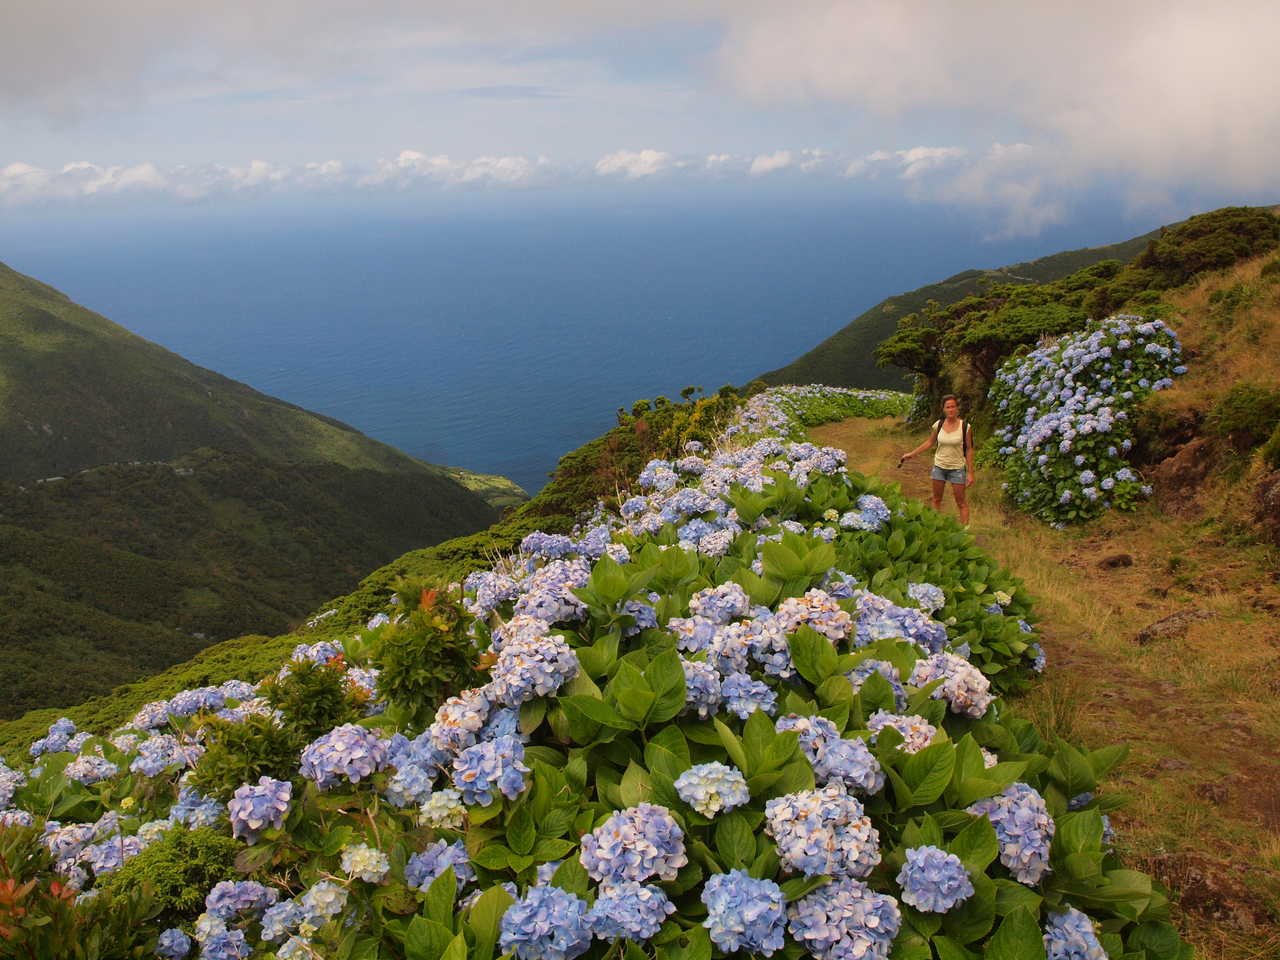 Hortensias fleuris sur l'île de Sao Miguel aux Açores